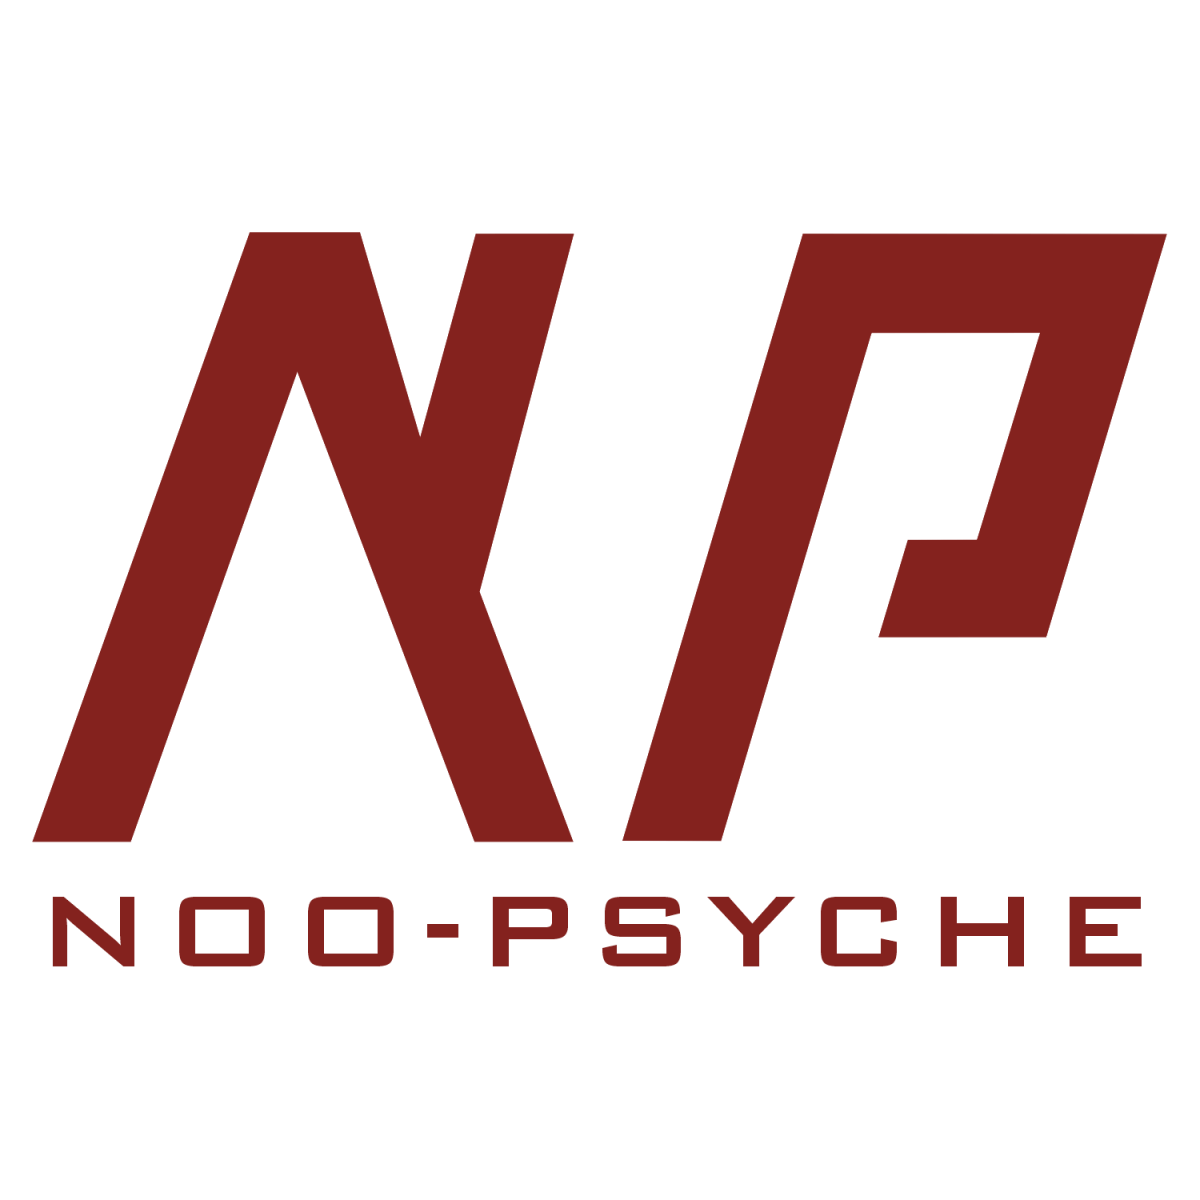 Noo Psyche logo.png